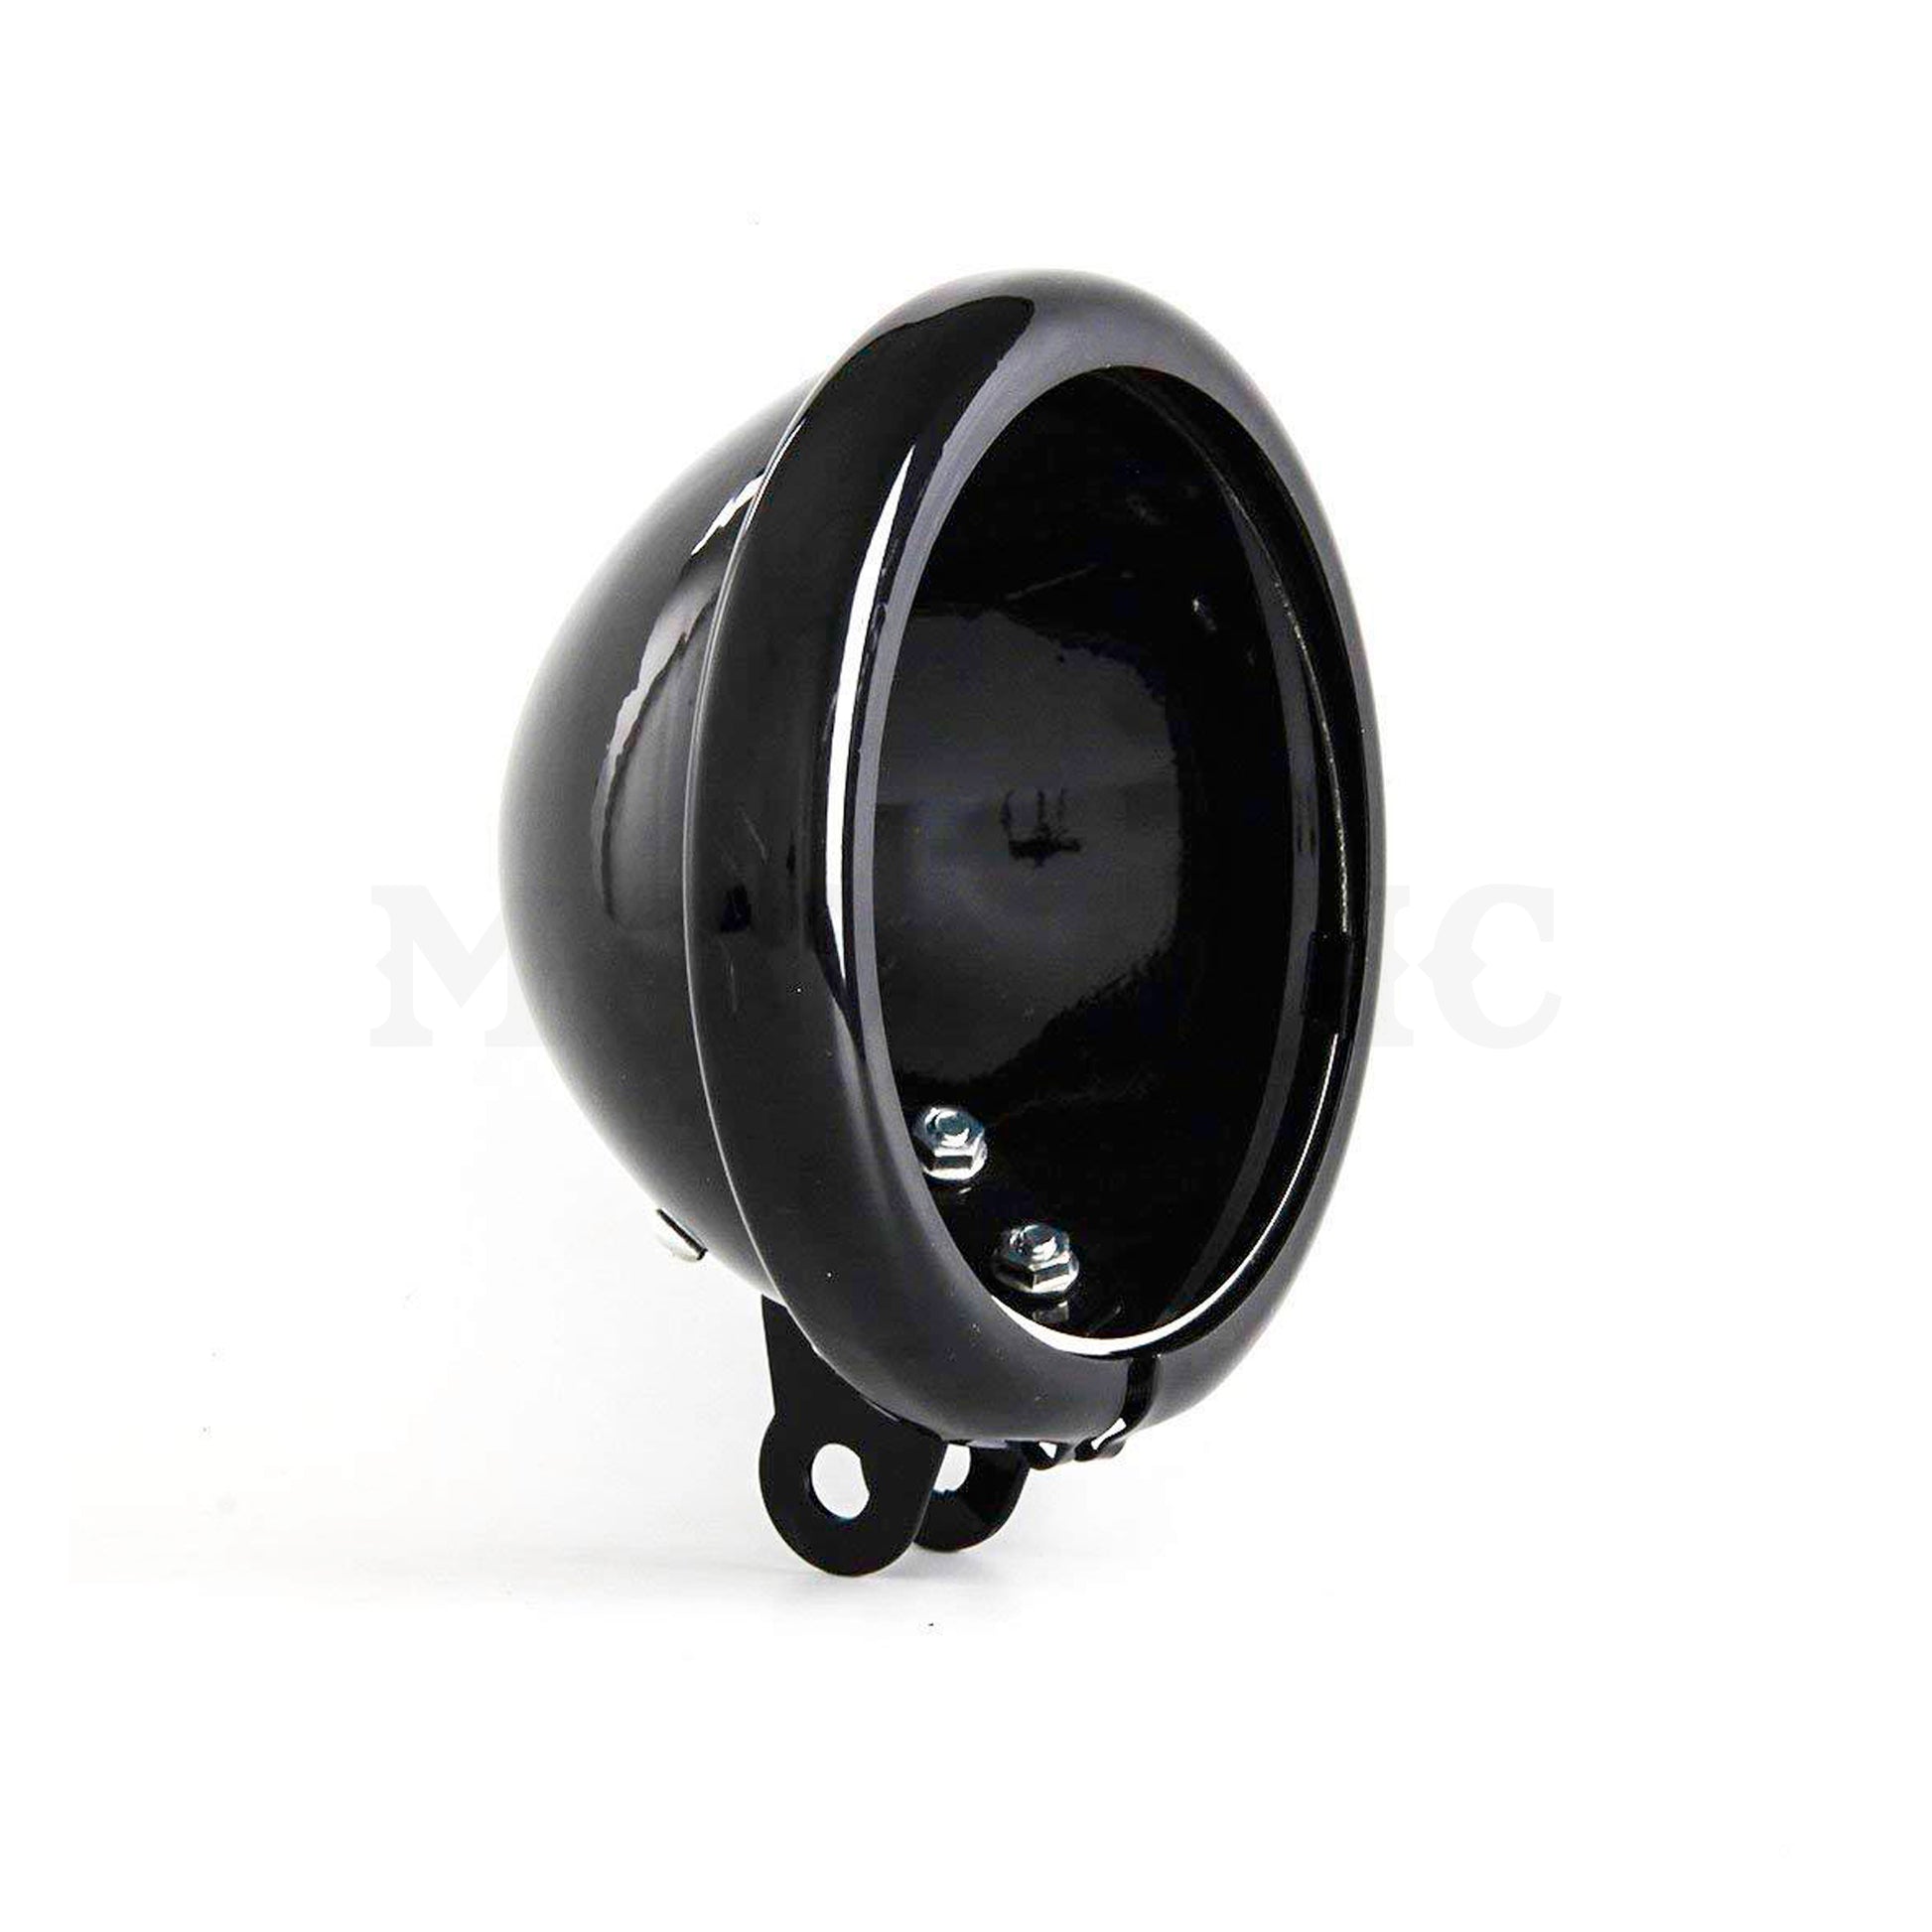 https://moonsmc.com/cdn/shop/products/moonsmc-575-headlight-bucket-harley.jpg?v=1587666143&width=1946